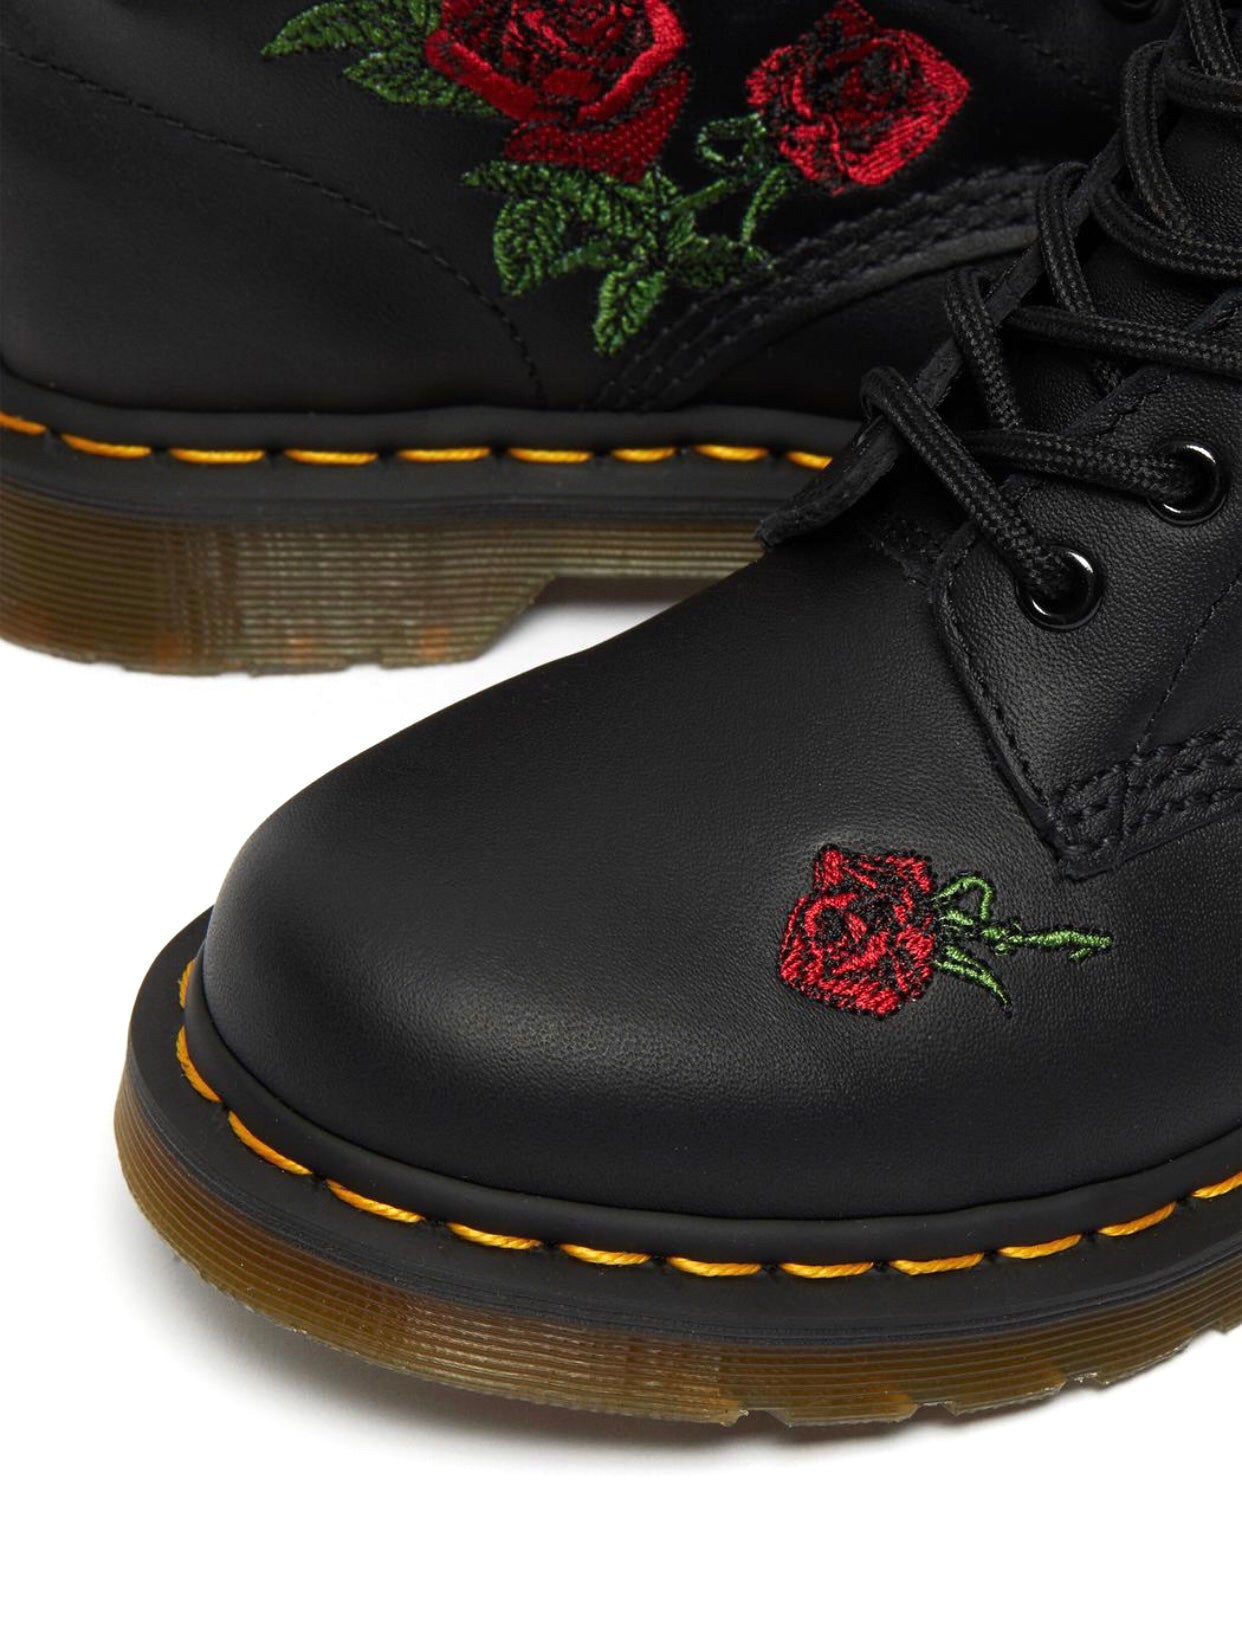 Dr. Martens 1460 Vonda Black Softy T Floral Ankle 8 Eyelet Boot